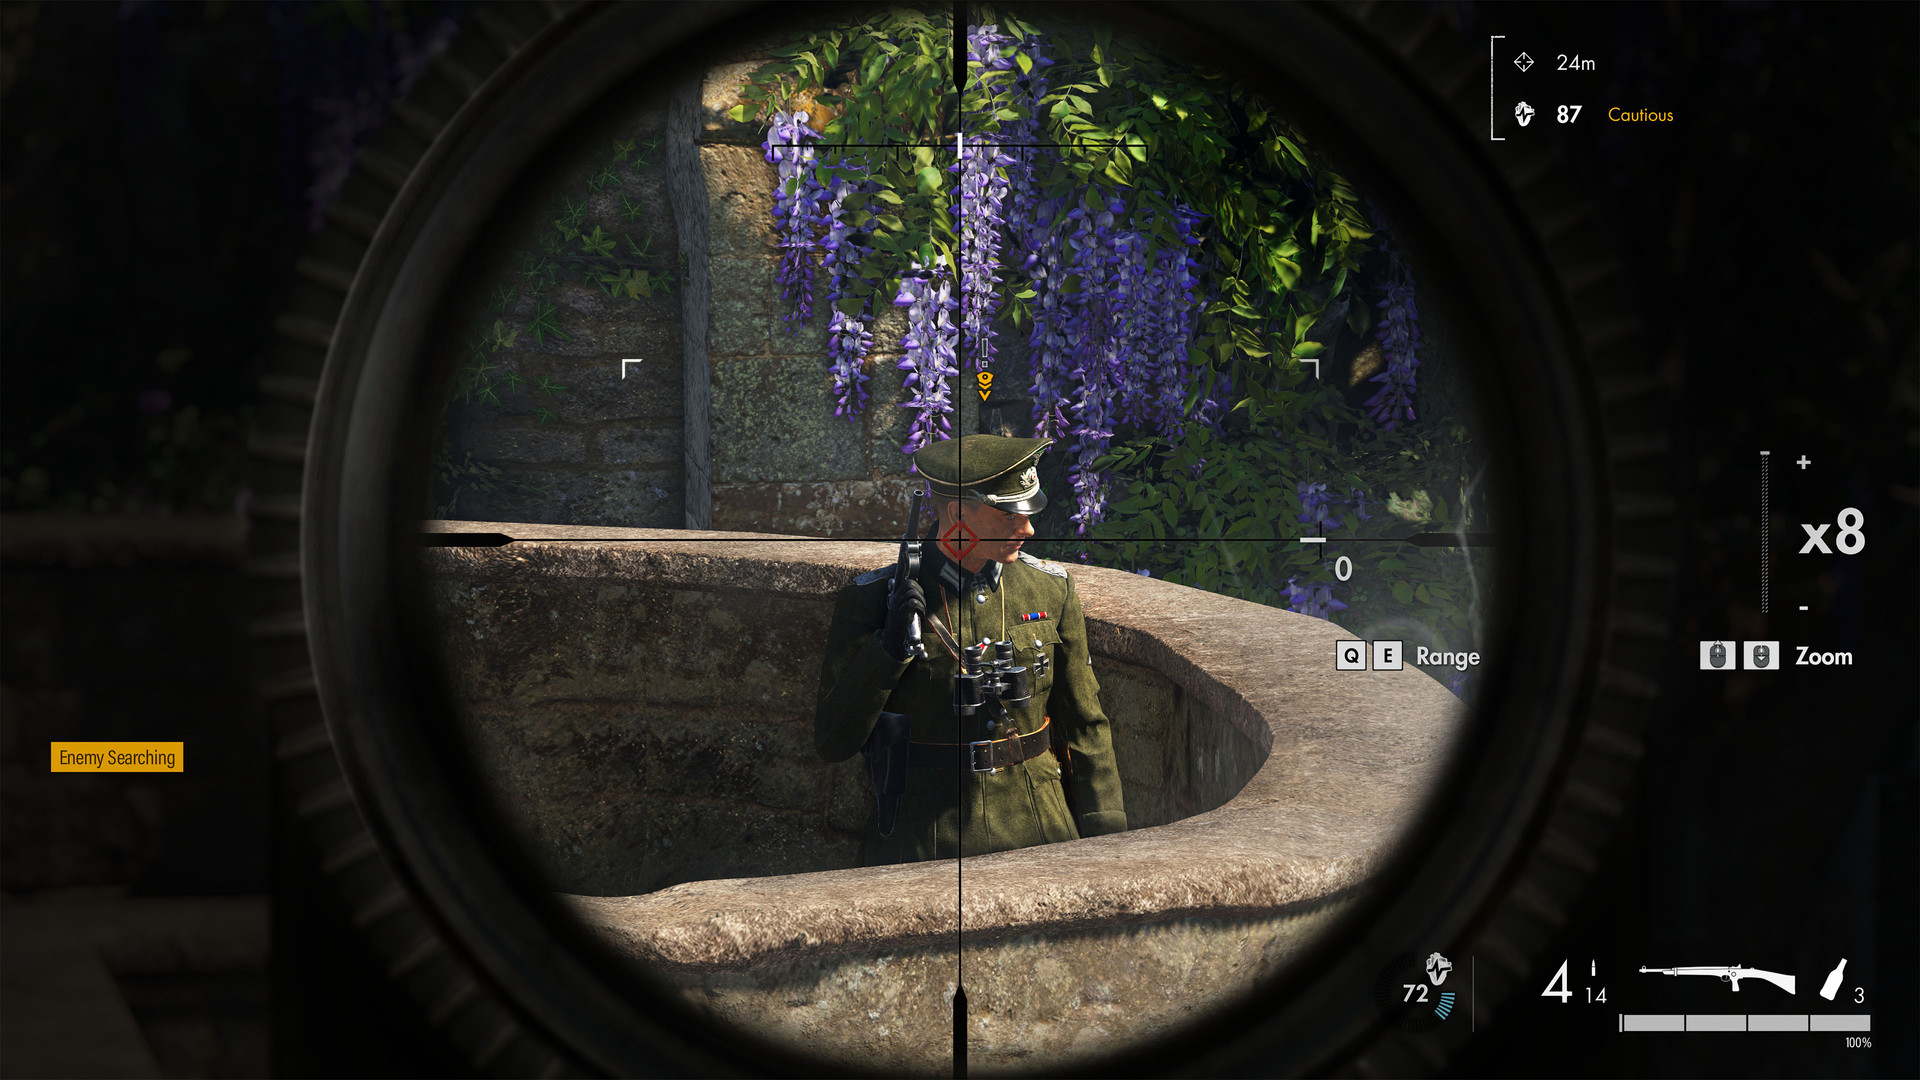 Скриншот-2 из игры Sniper Elite 5 для PS